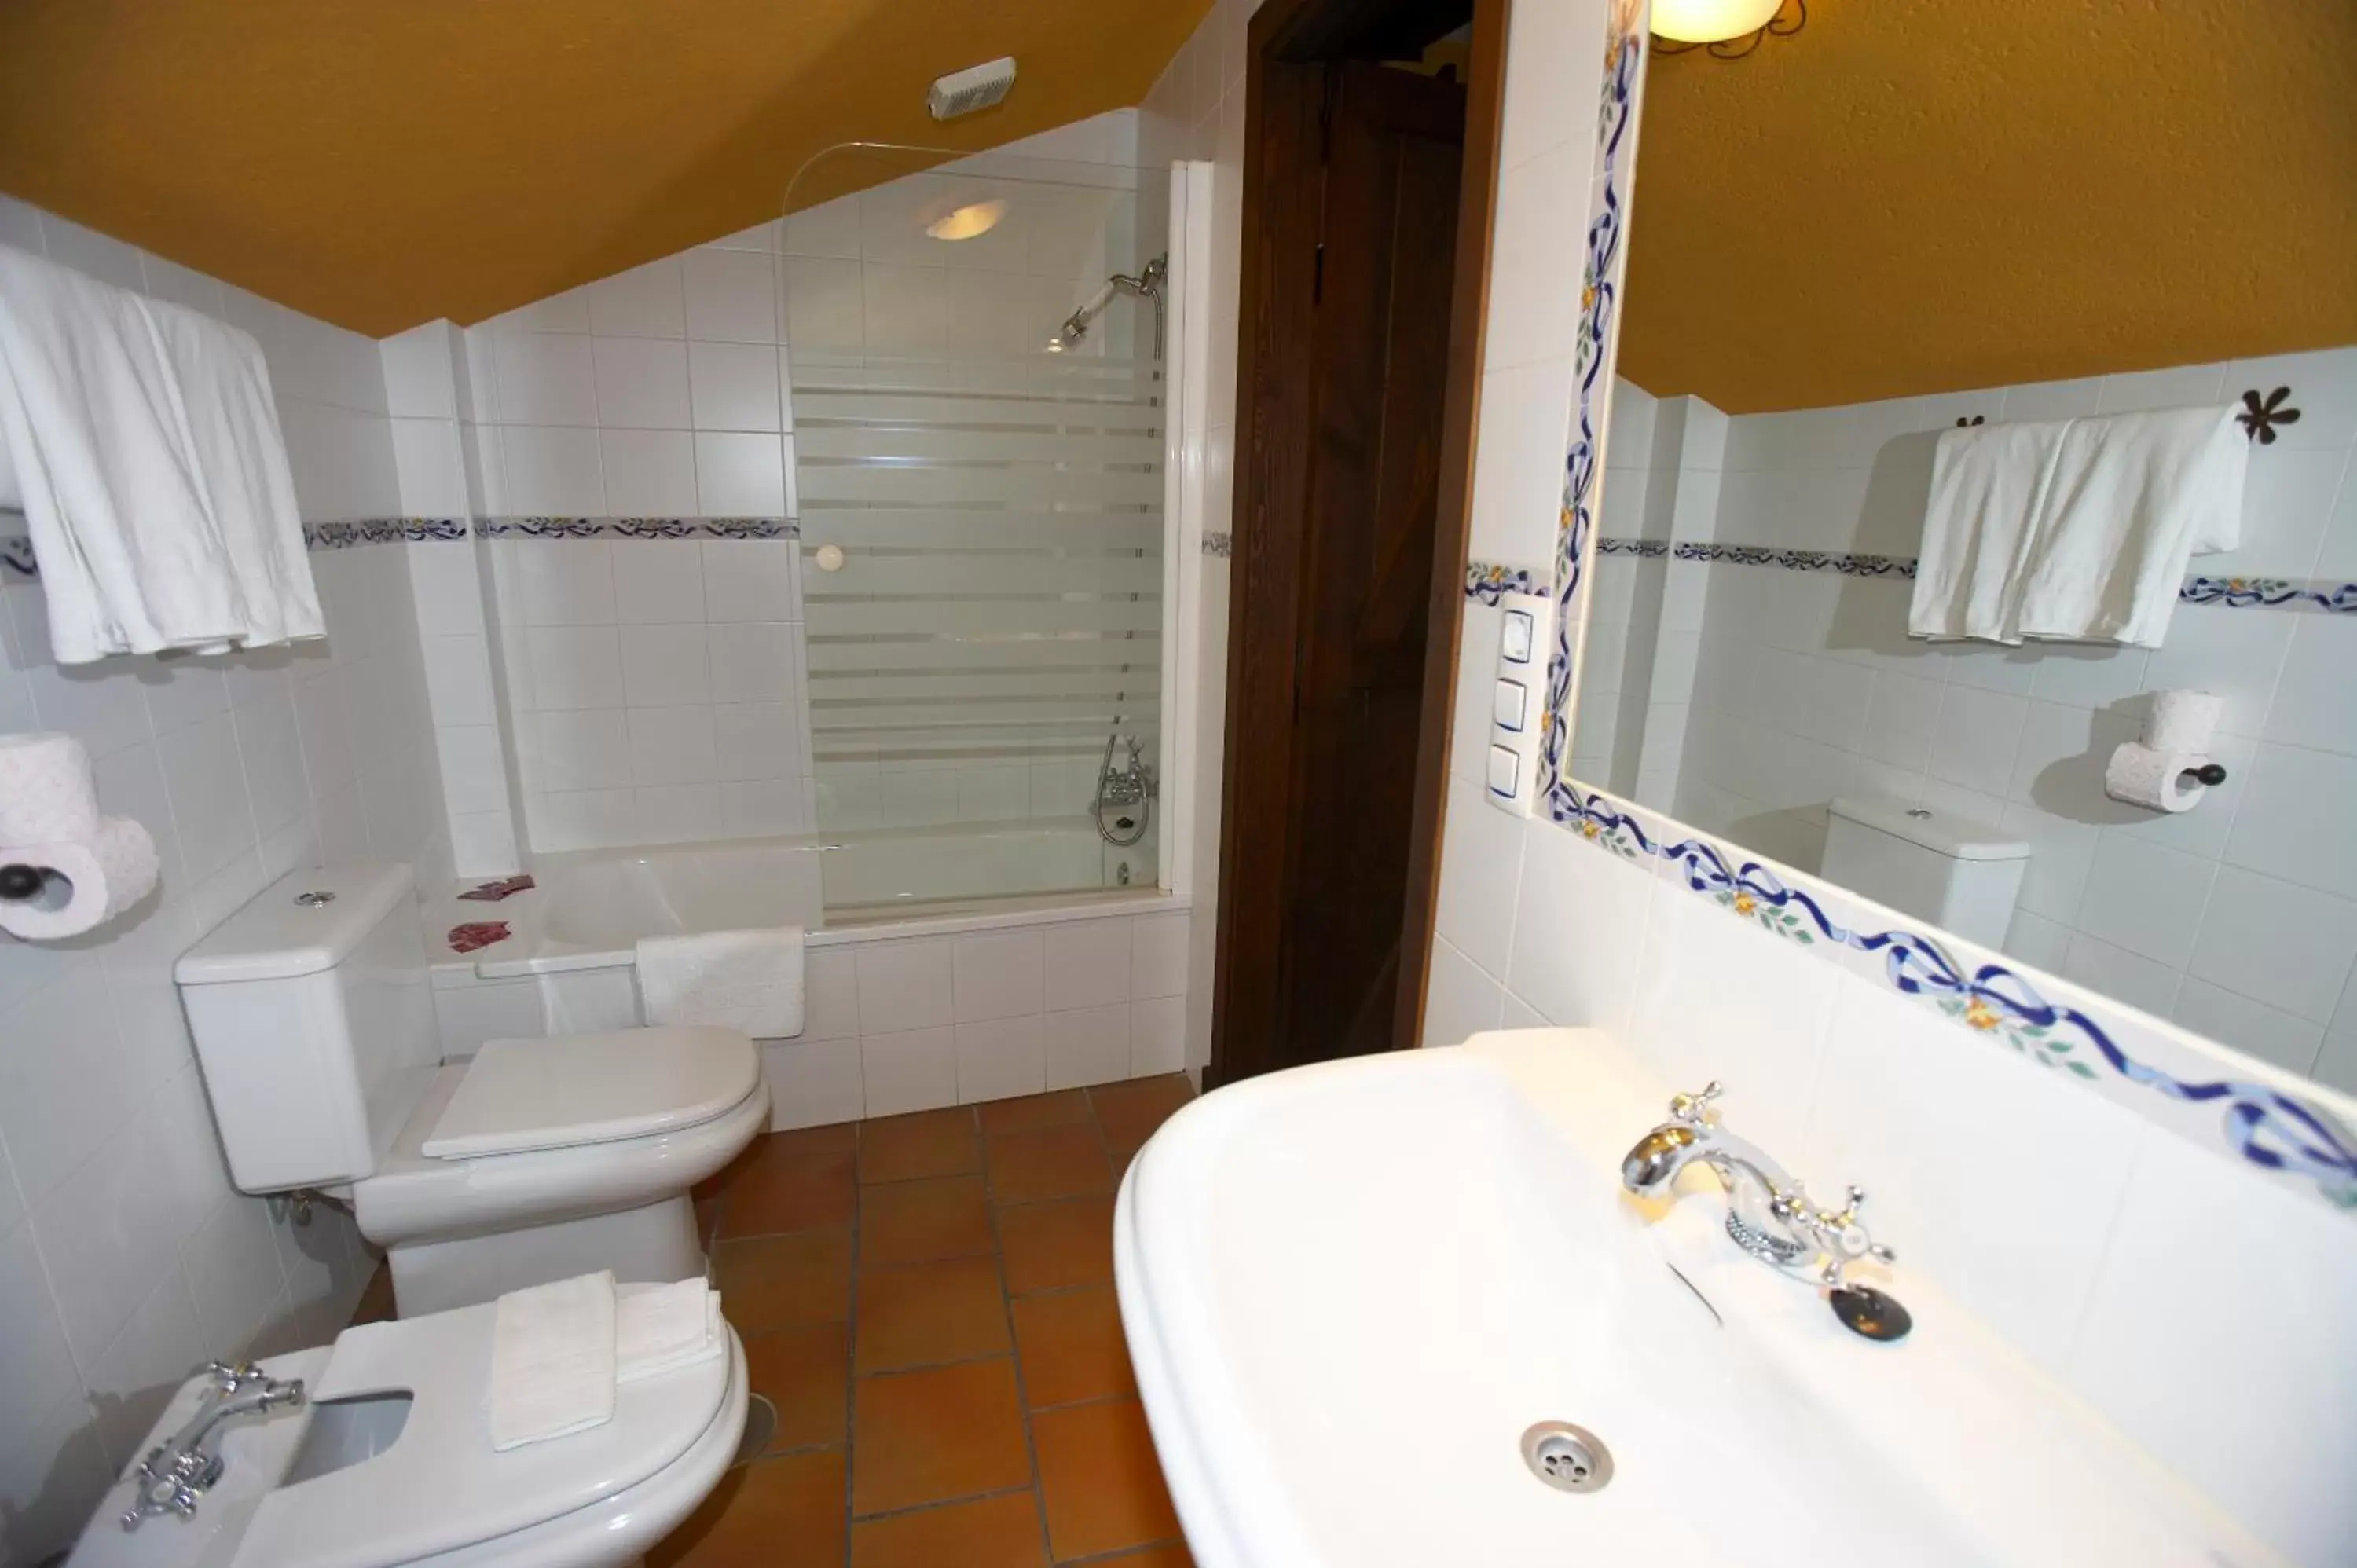 Bathroom in Hotel Posada San Antonio